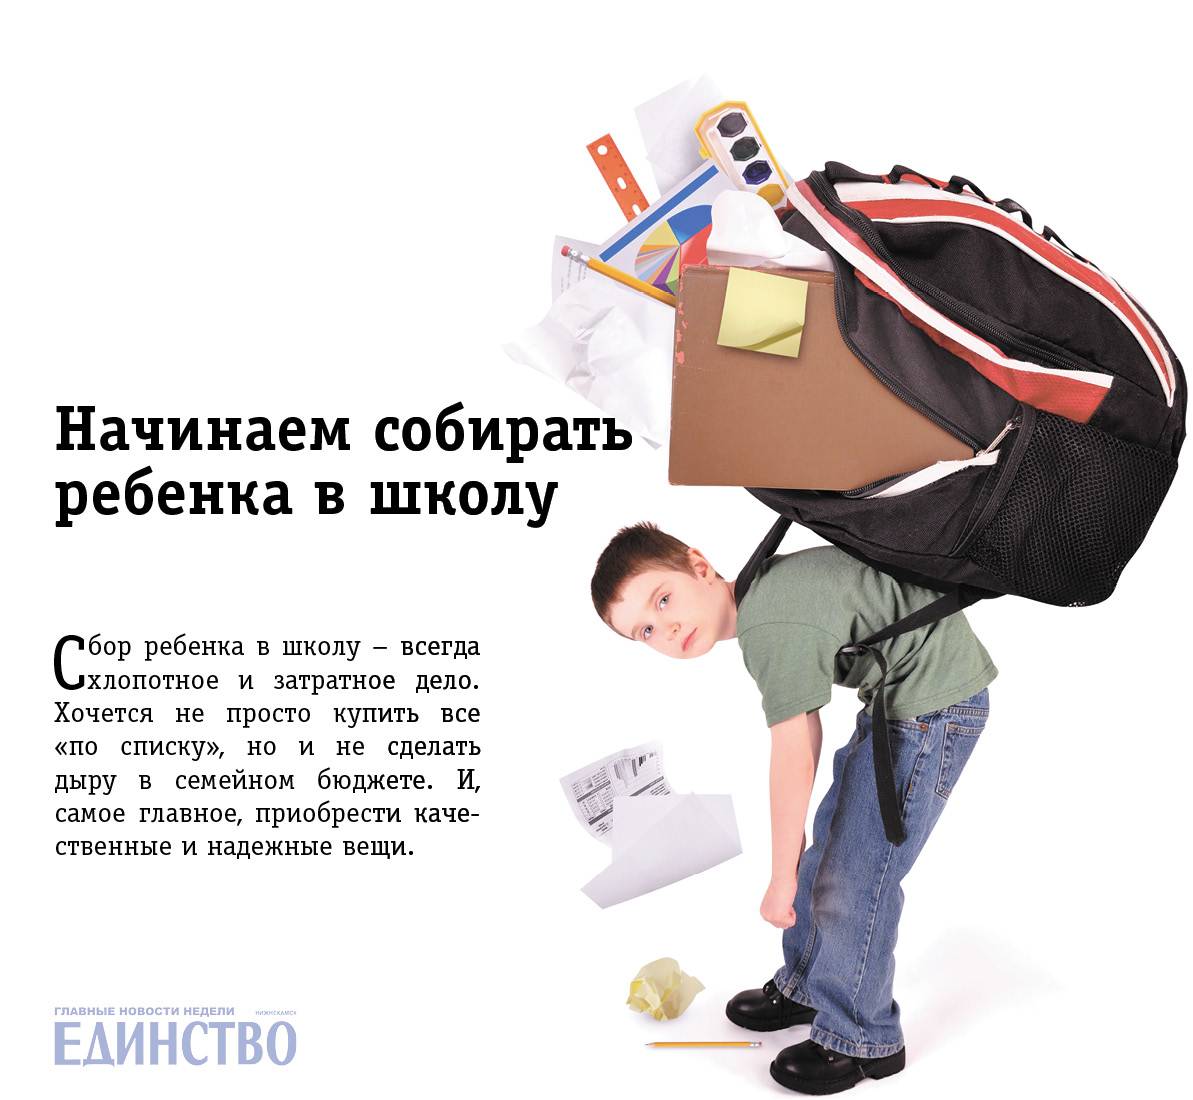 Как сэкономить на сборах ребенка в школу: покупка одежды, канцелярии, учебных пособий / mama66.ru